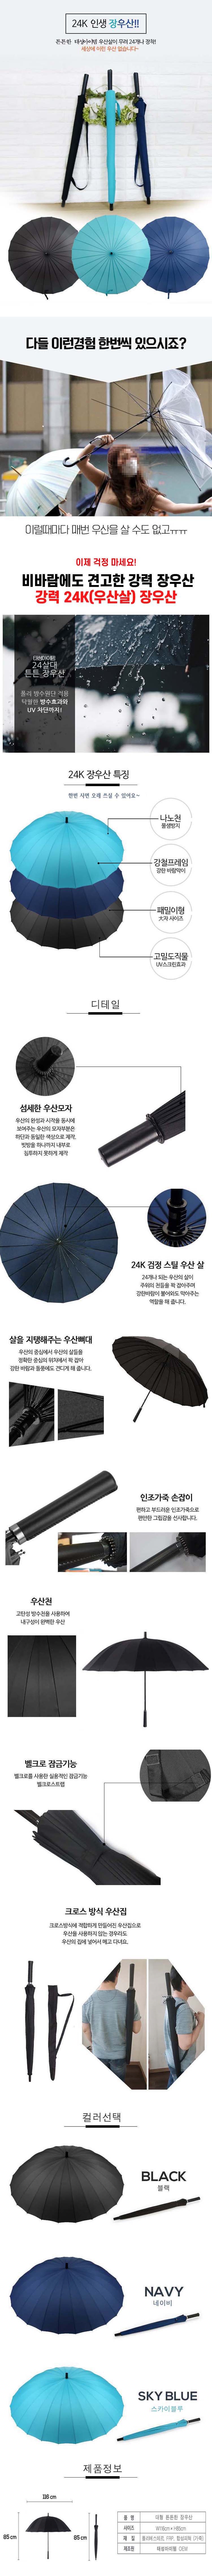 우산,장우산,장마우산,컬러우산,태성아이템